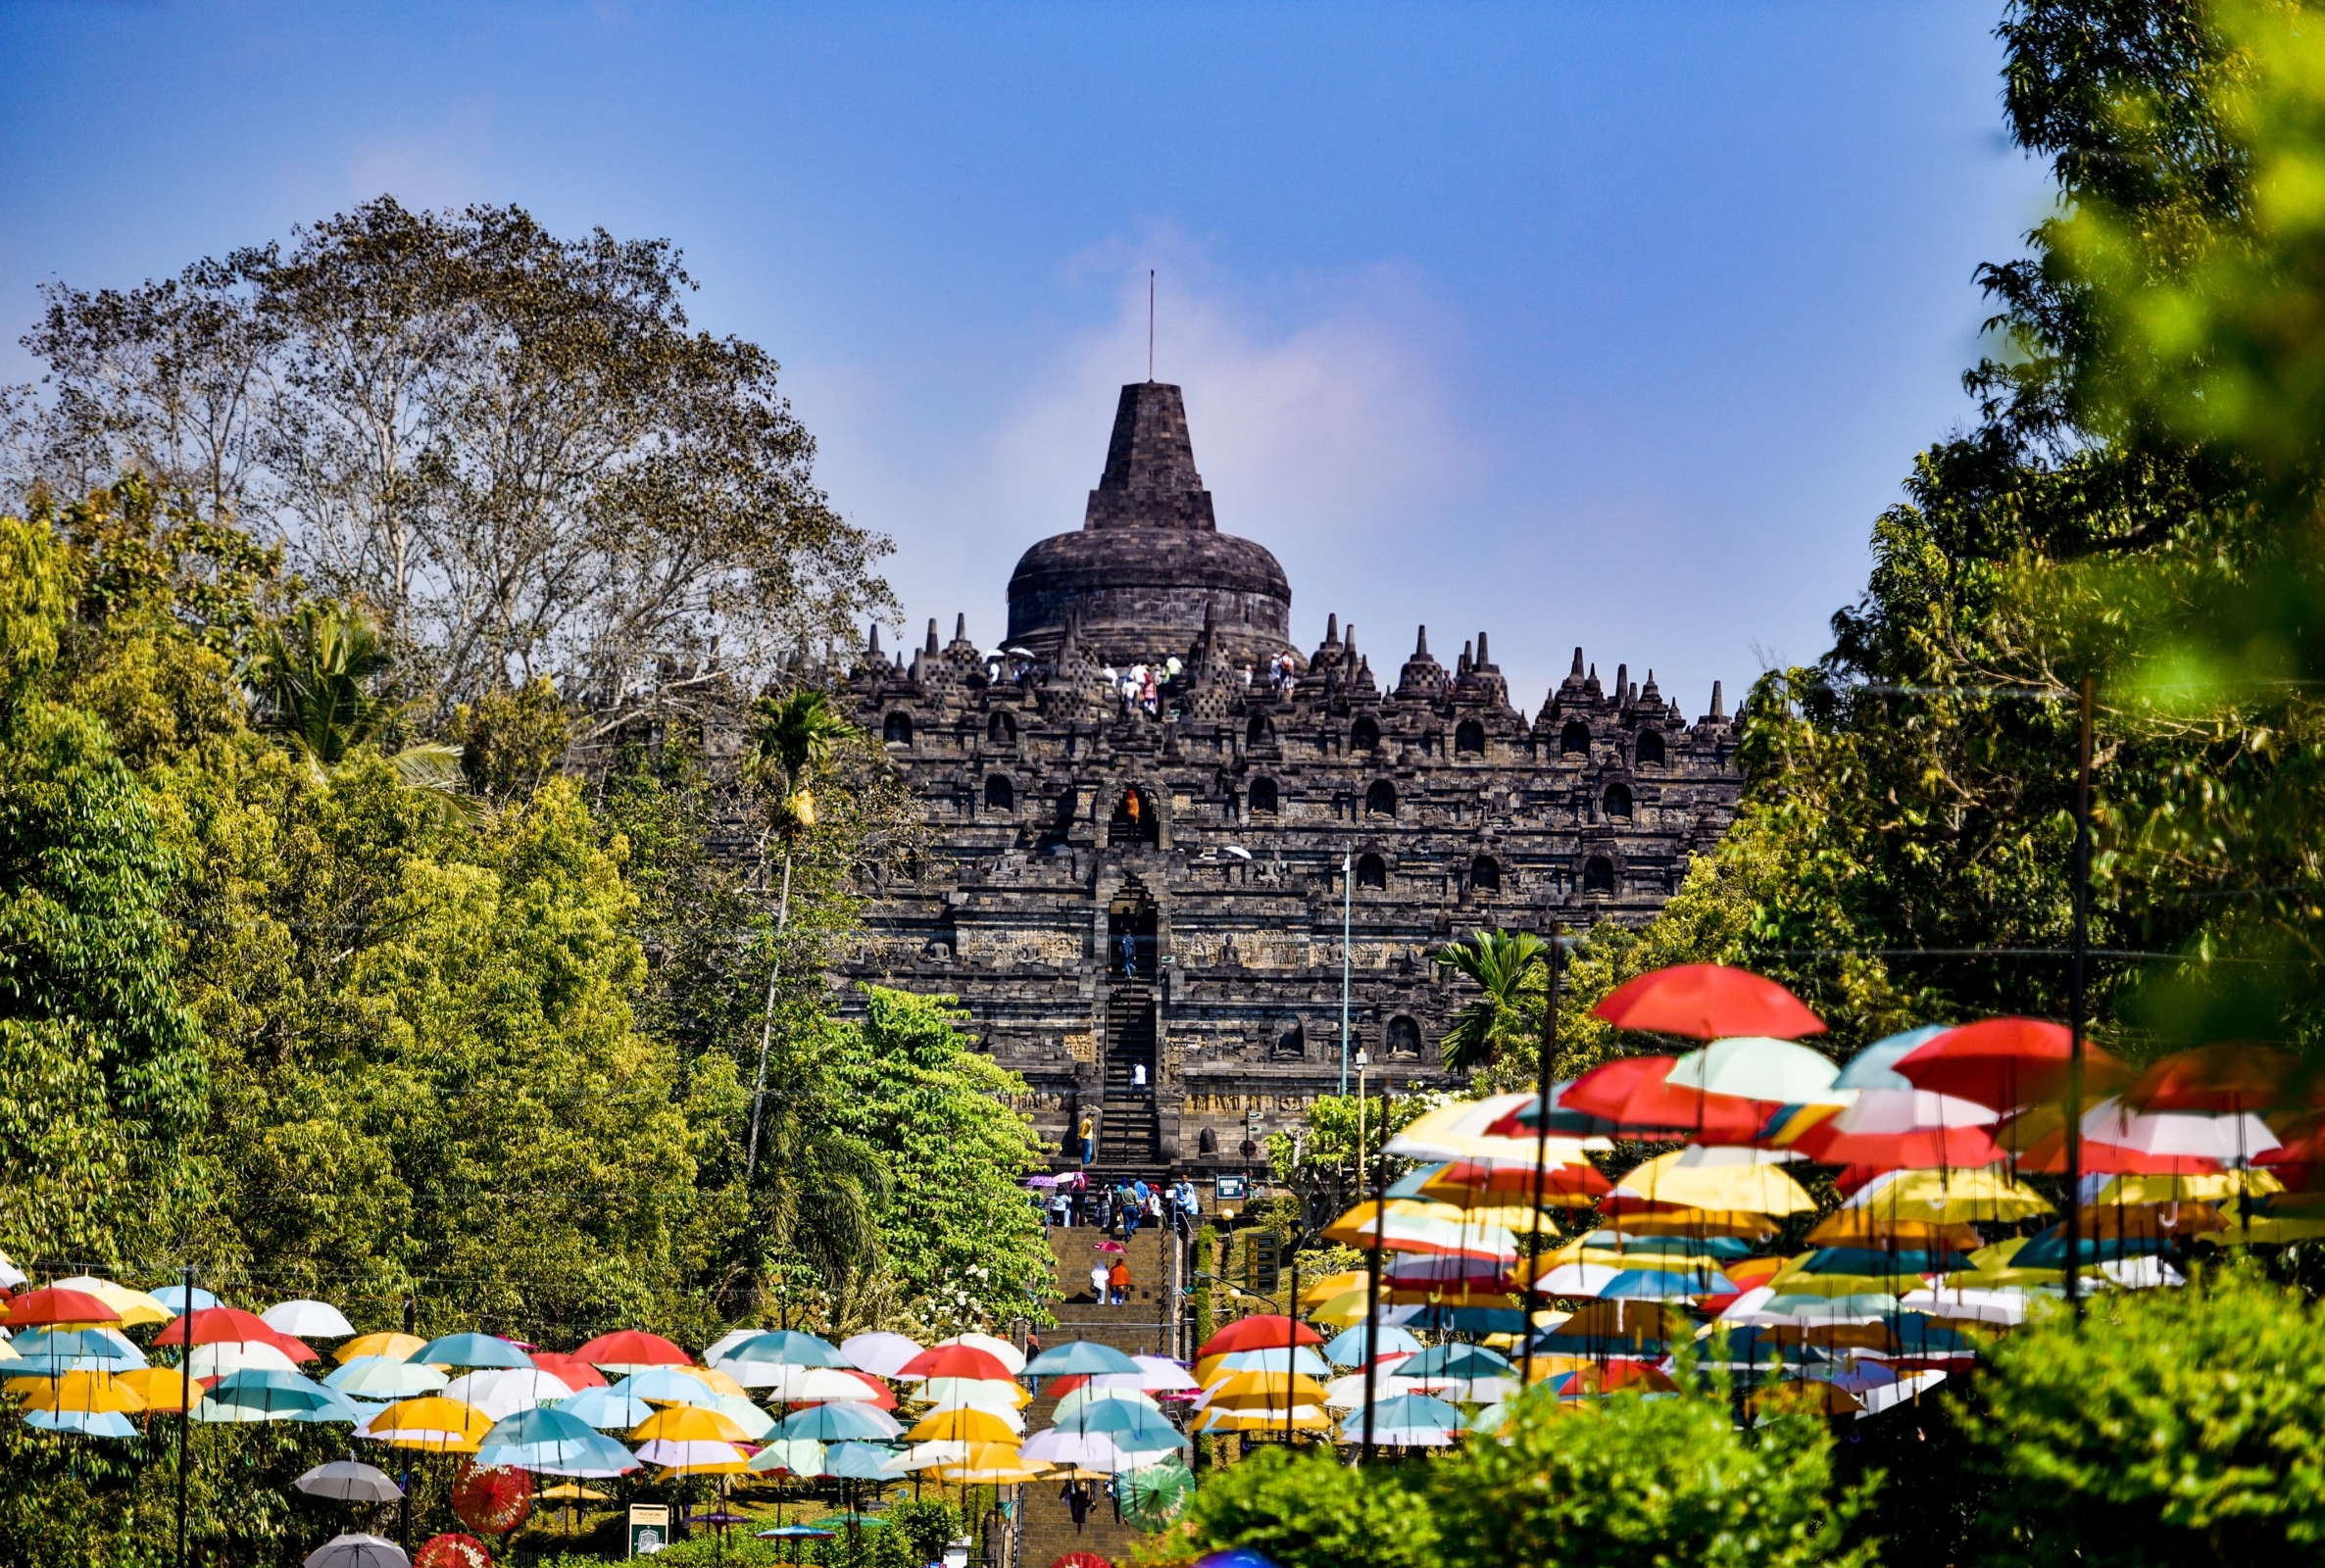 Candi Borobudur menjadi salah satu destinasi wisata favorit (Sumber gambar: Herry Sutanto/Unsplash)